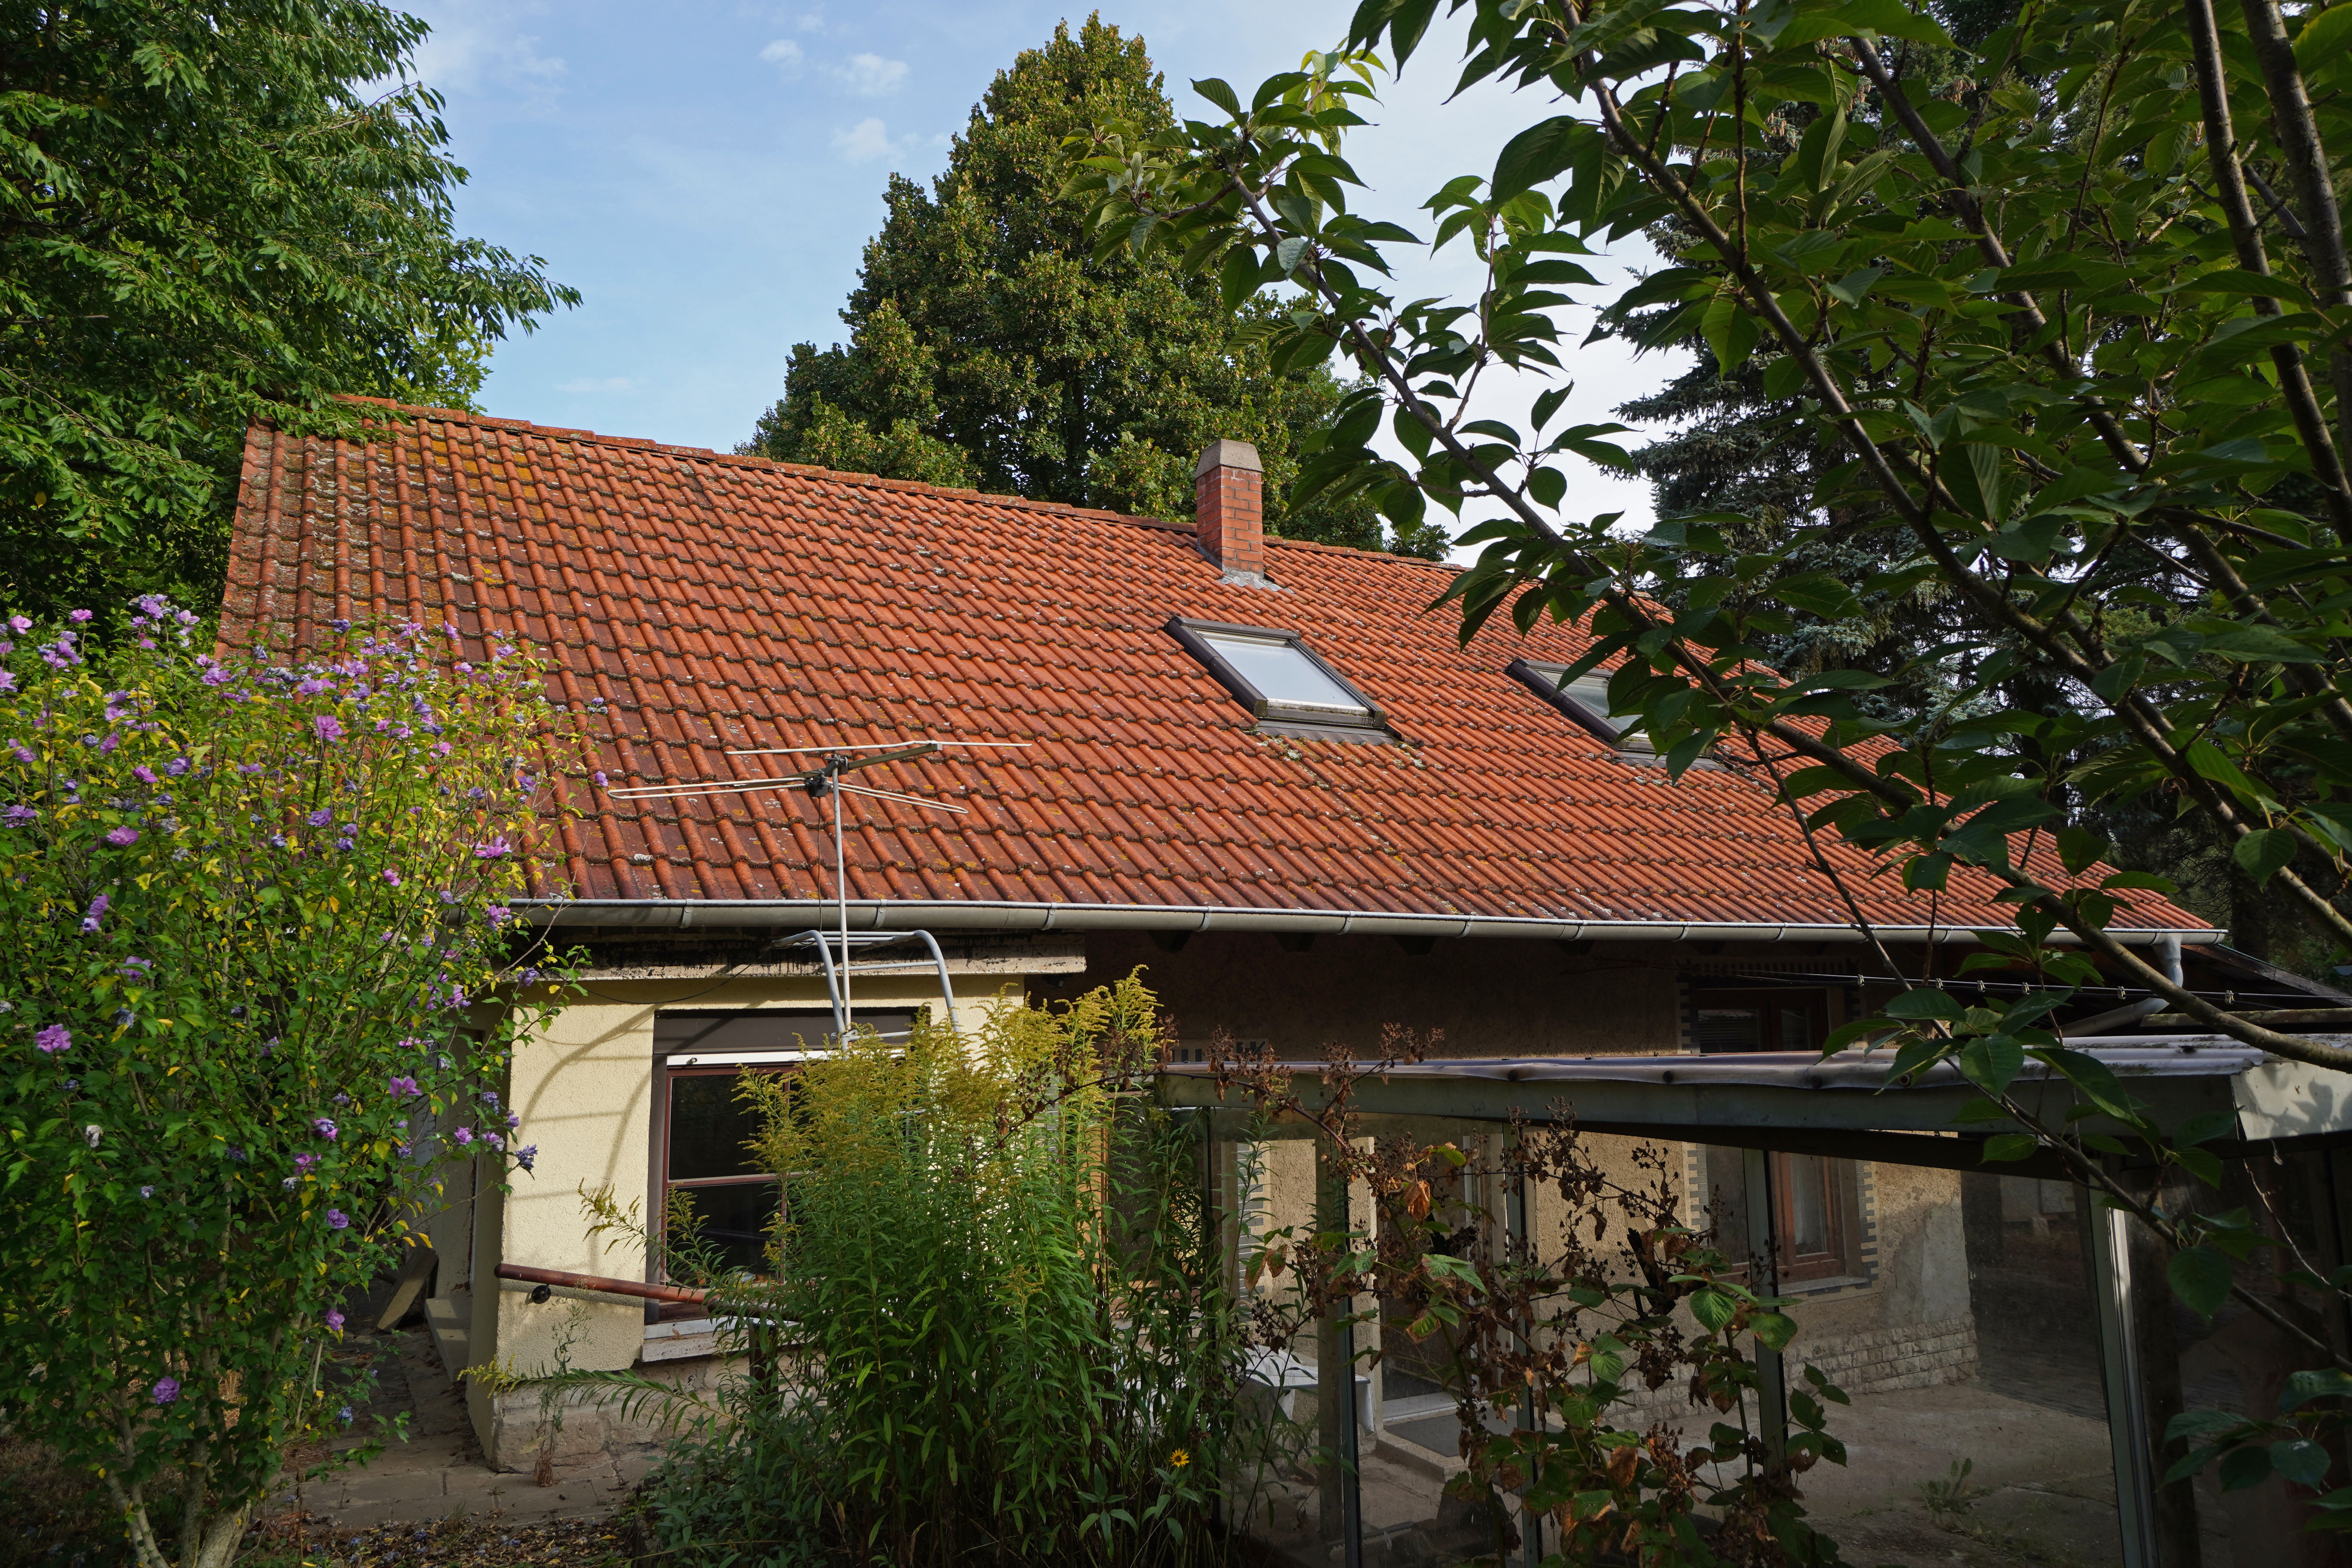 große, südlich ausgerichtete Dachflächen ideal für Solarunterstützung